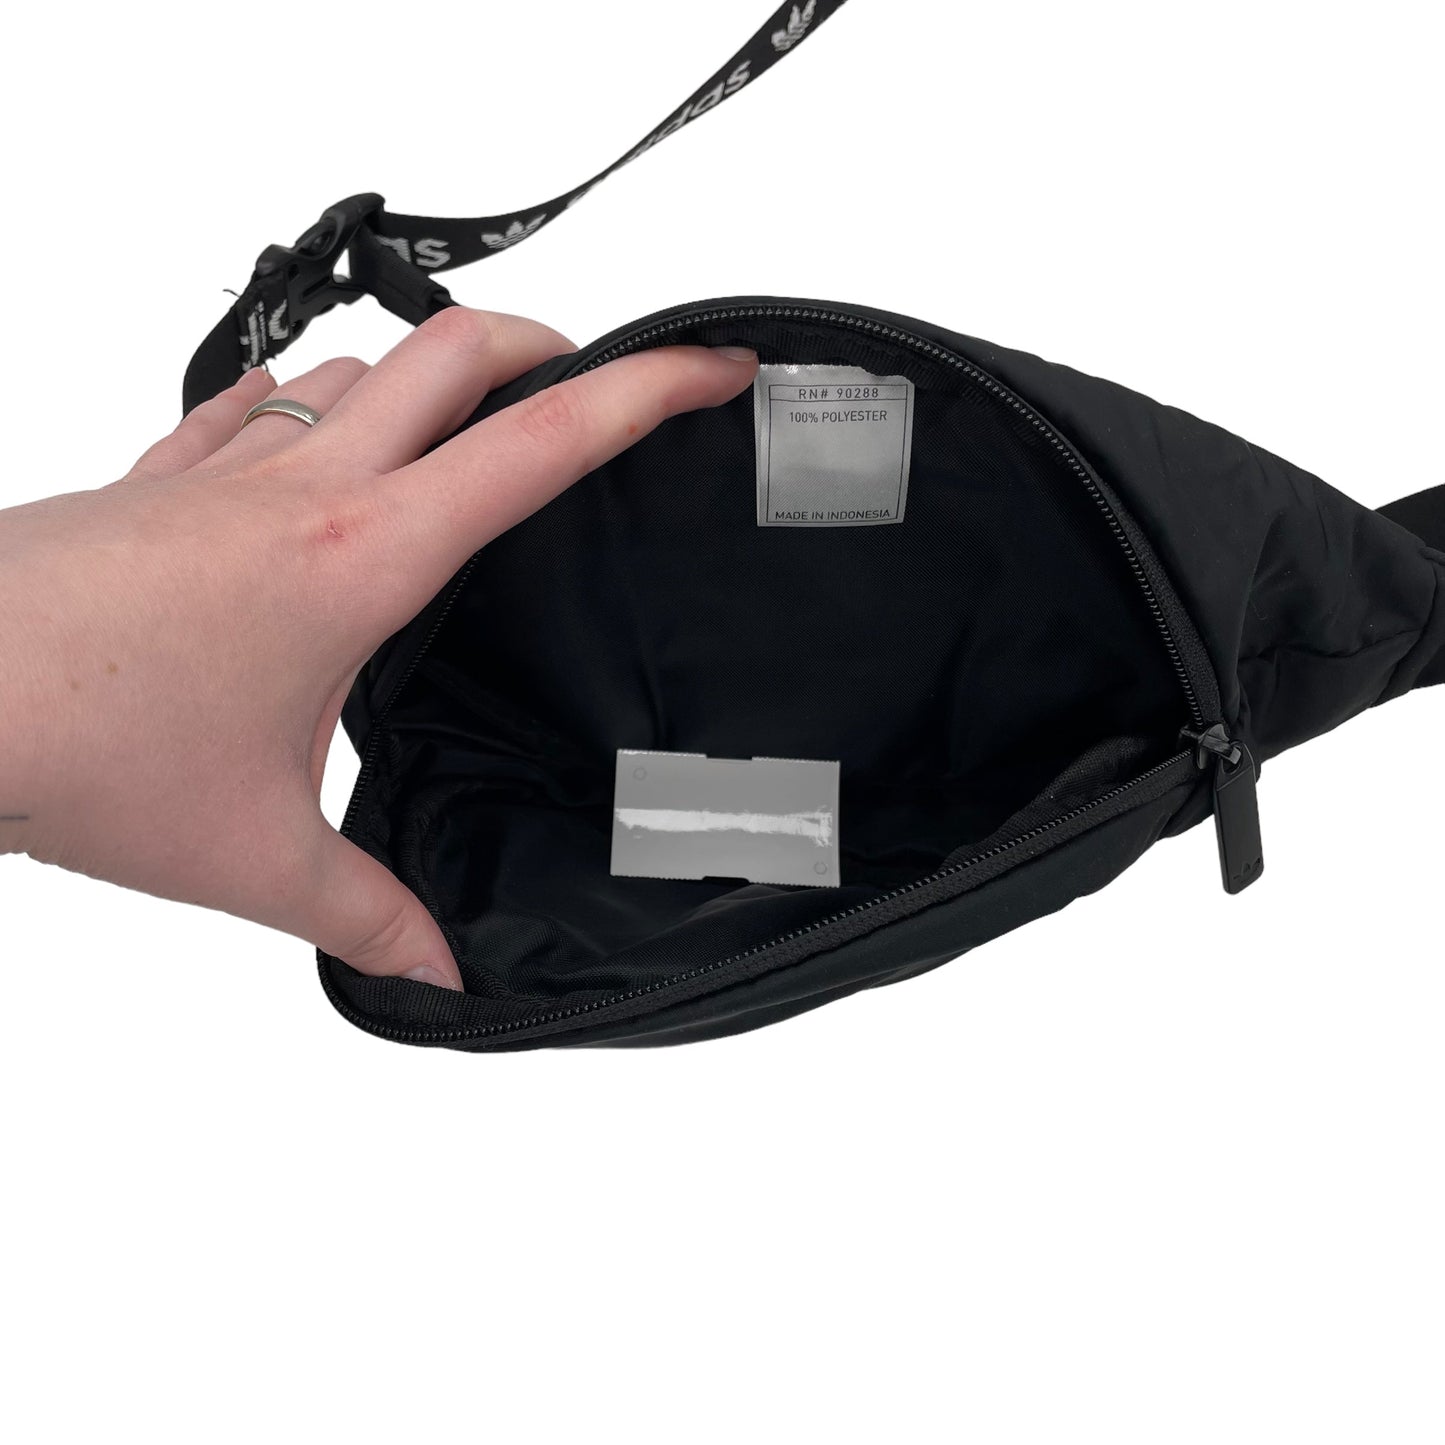 Belt Bag By Adidas  Size: Medium